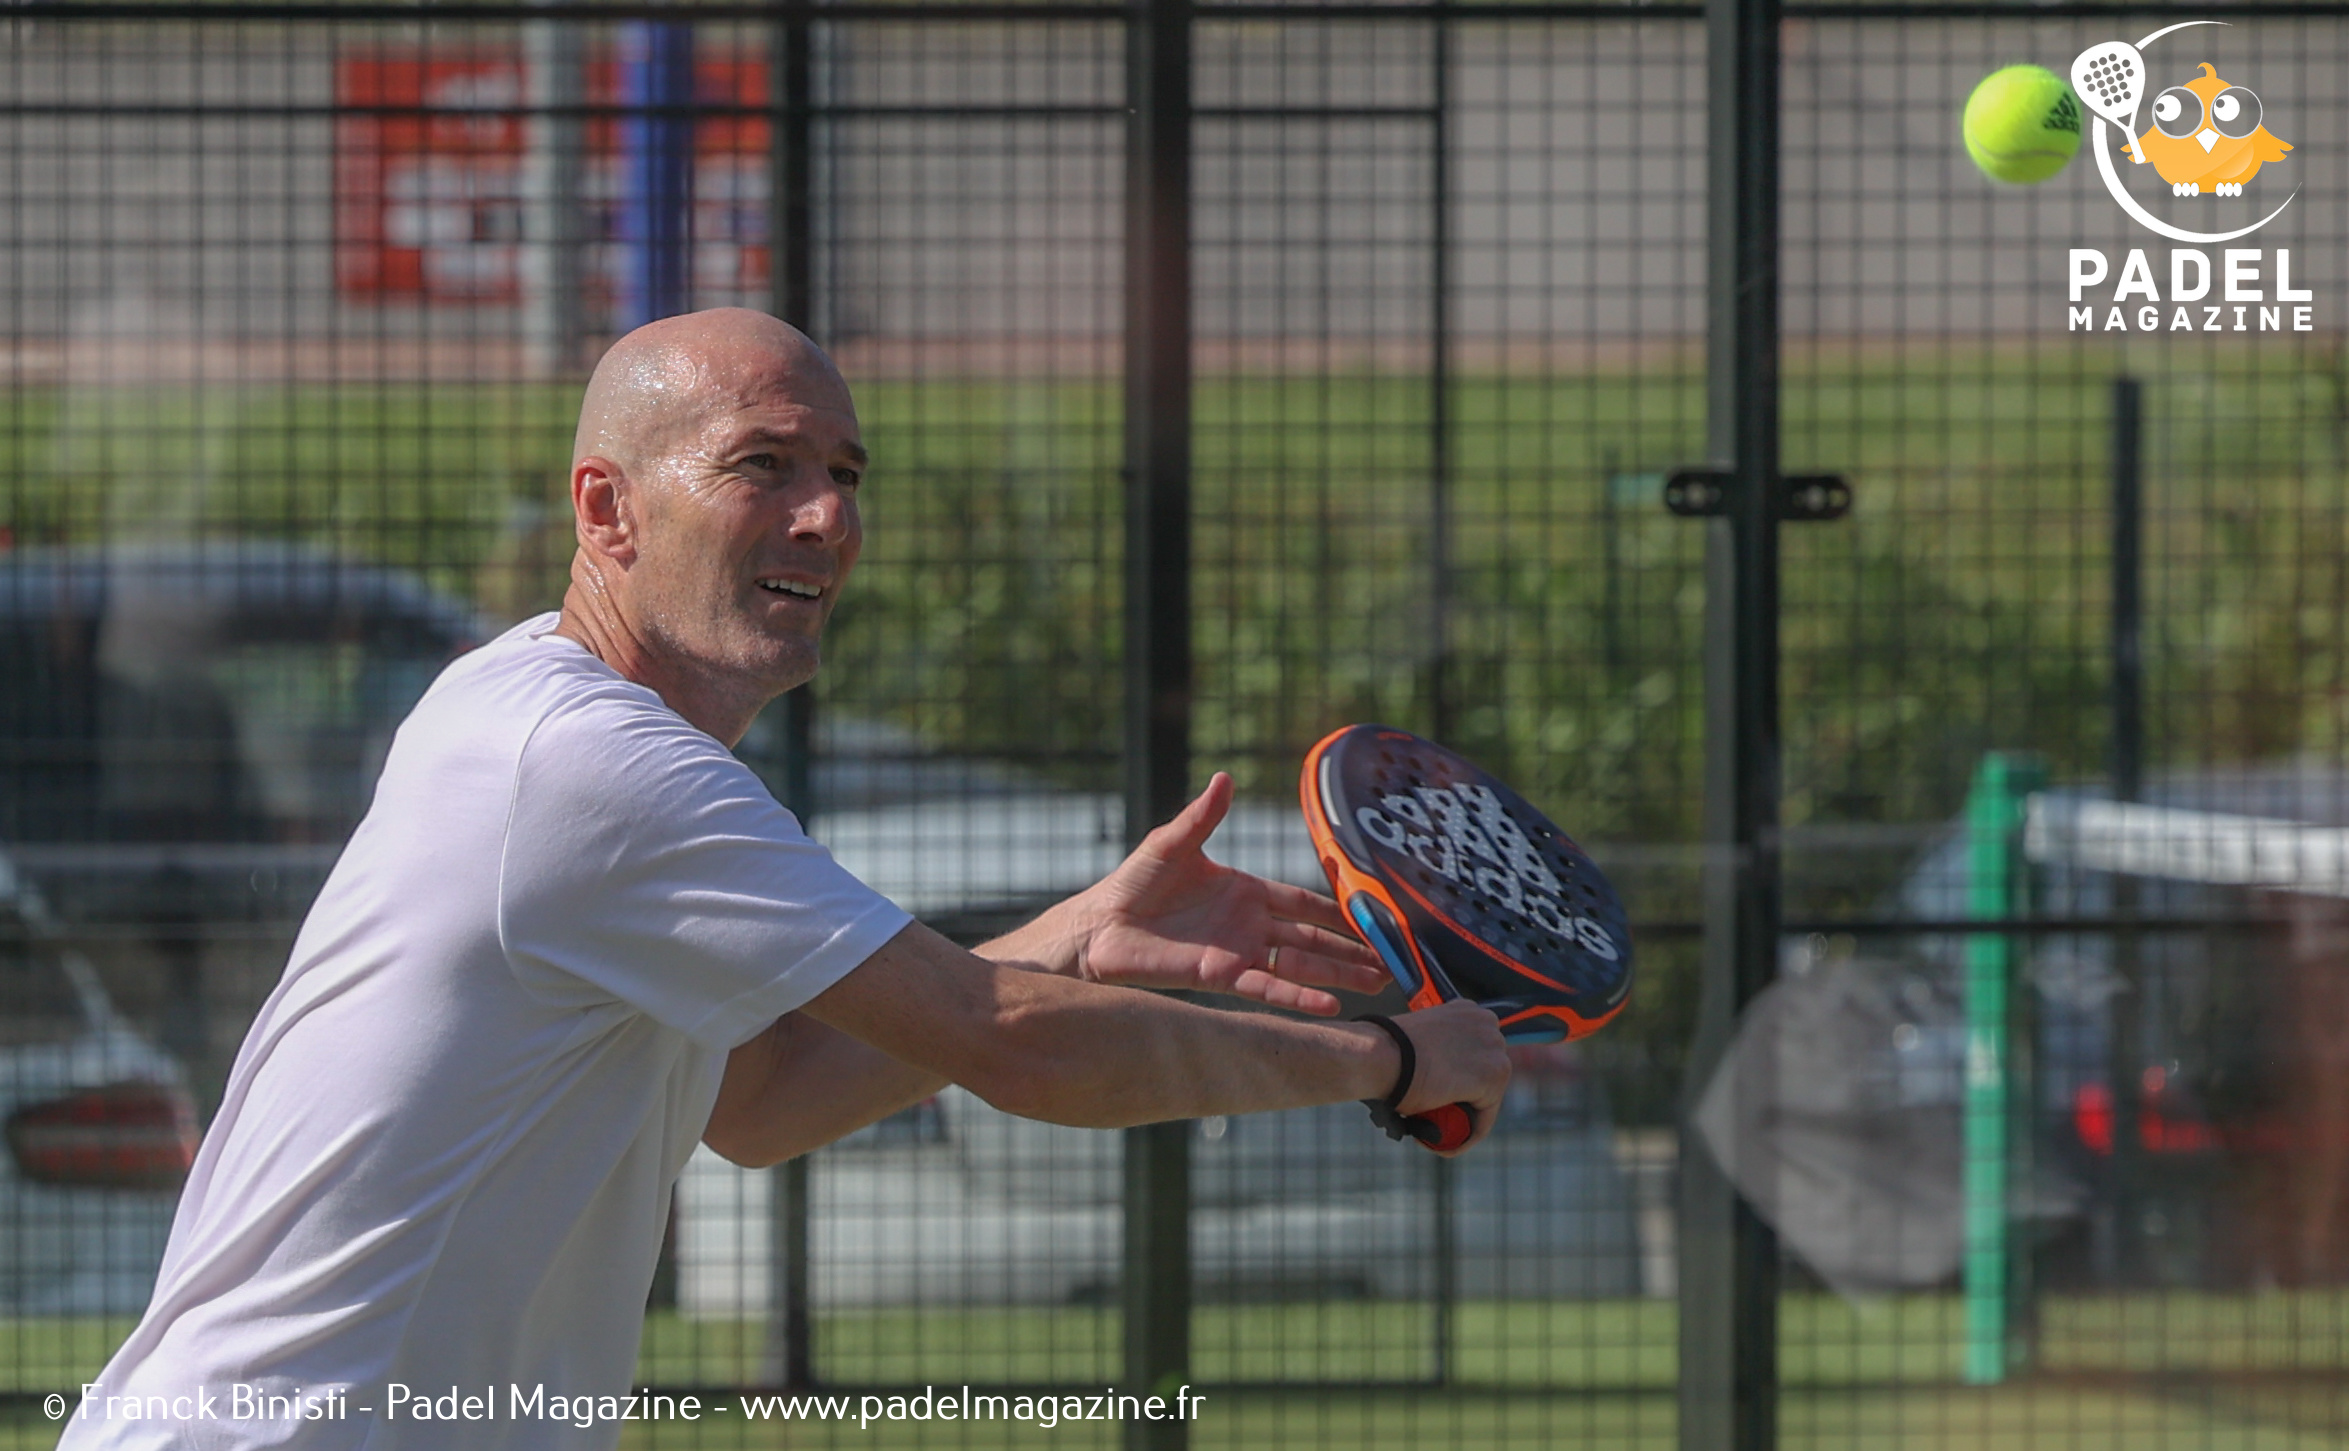 Zidane: "The padel kehittyy kovaa vauhtia Ranskassa"